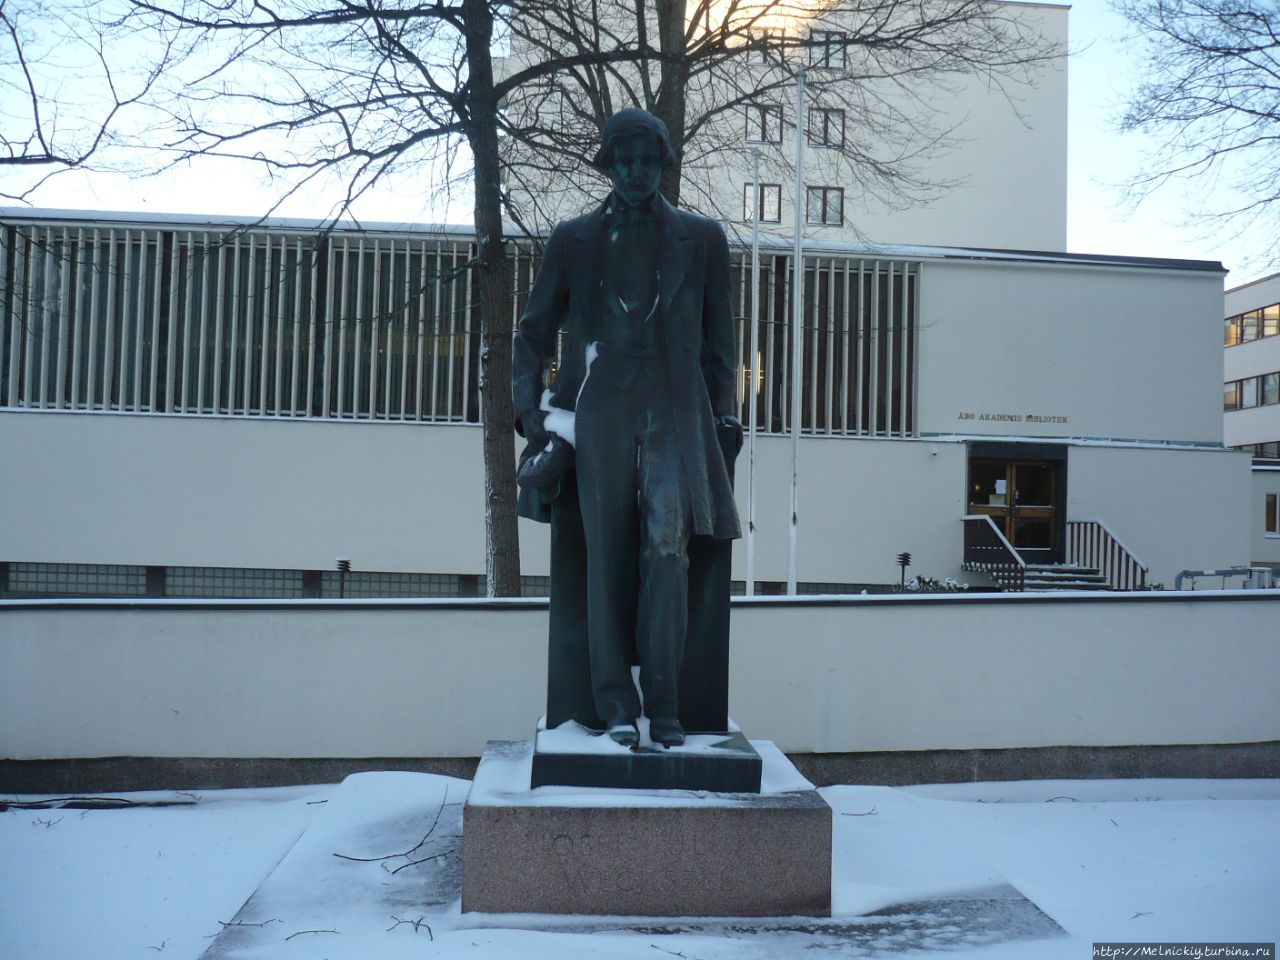 Памятник Йосефу Юлиусу Векселлю / Monument to Joseph Julius Veksel